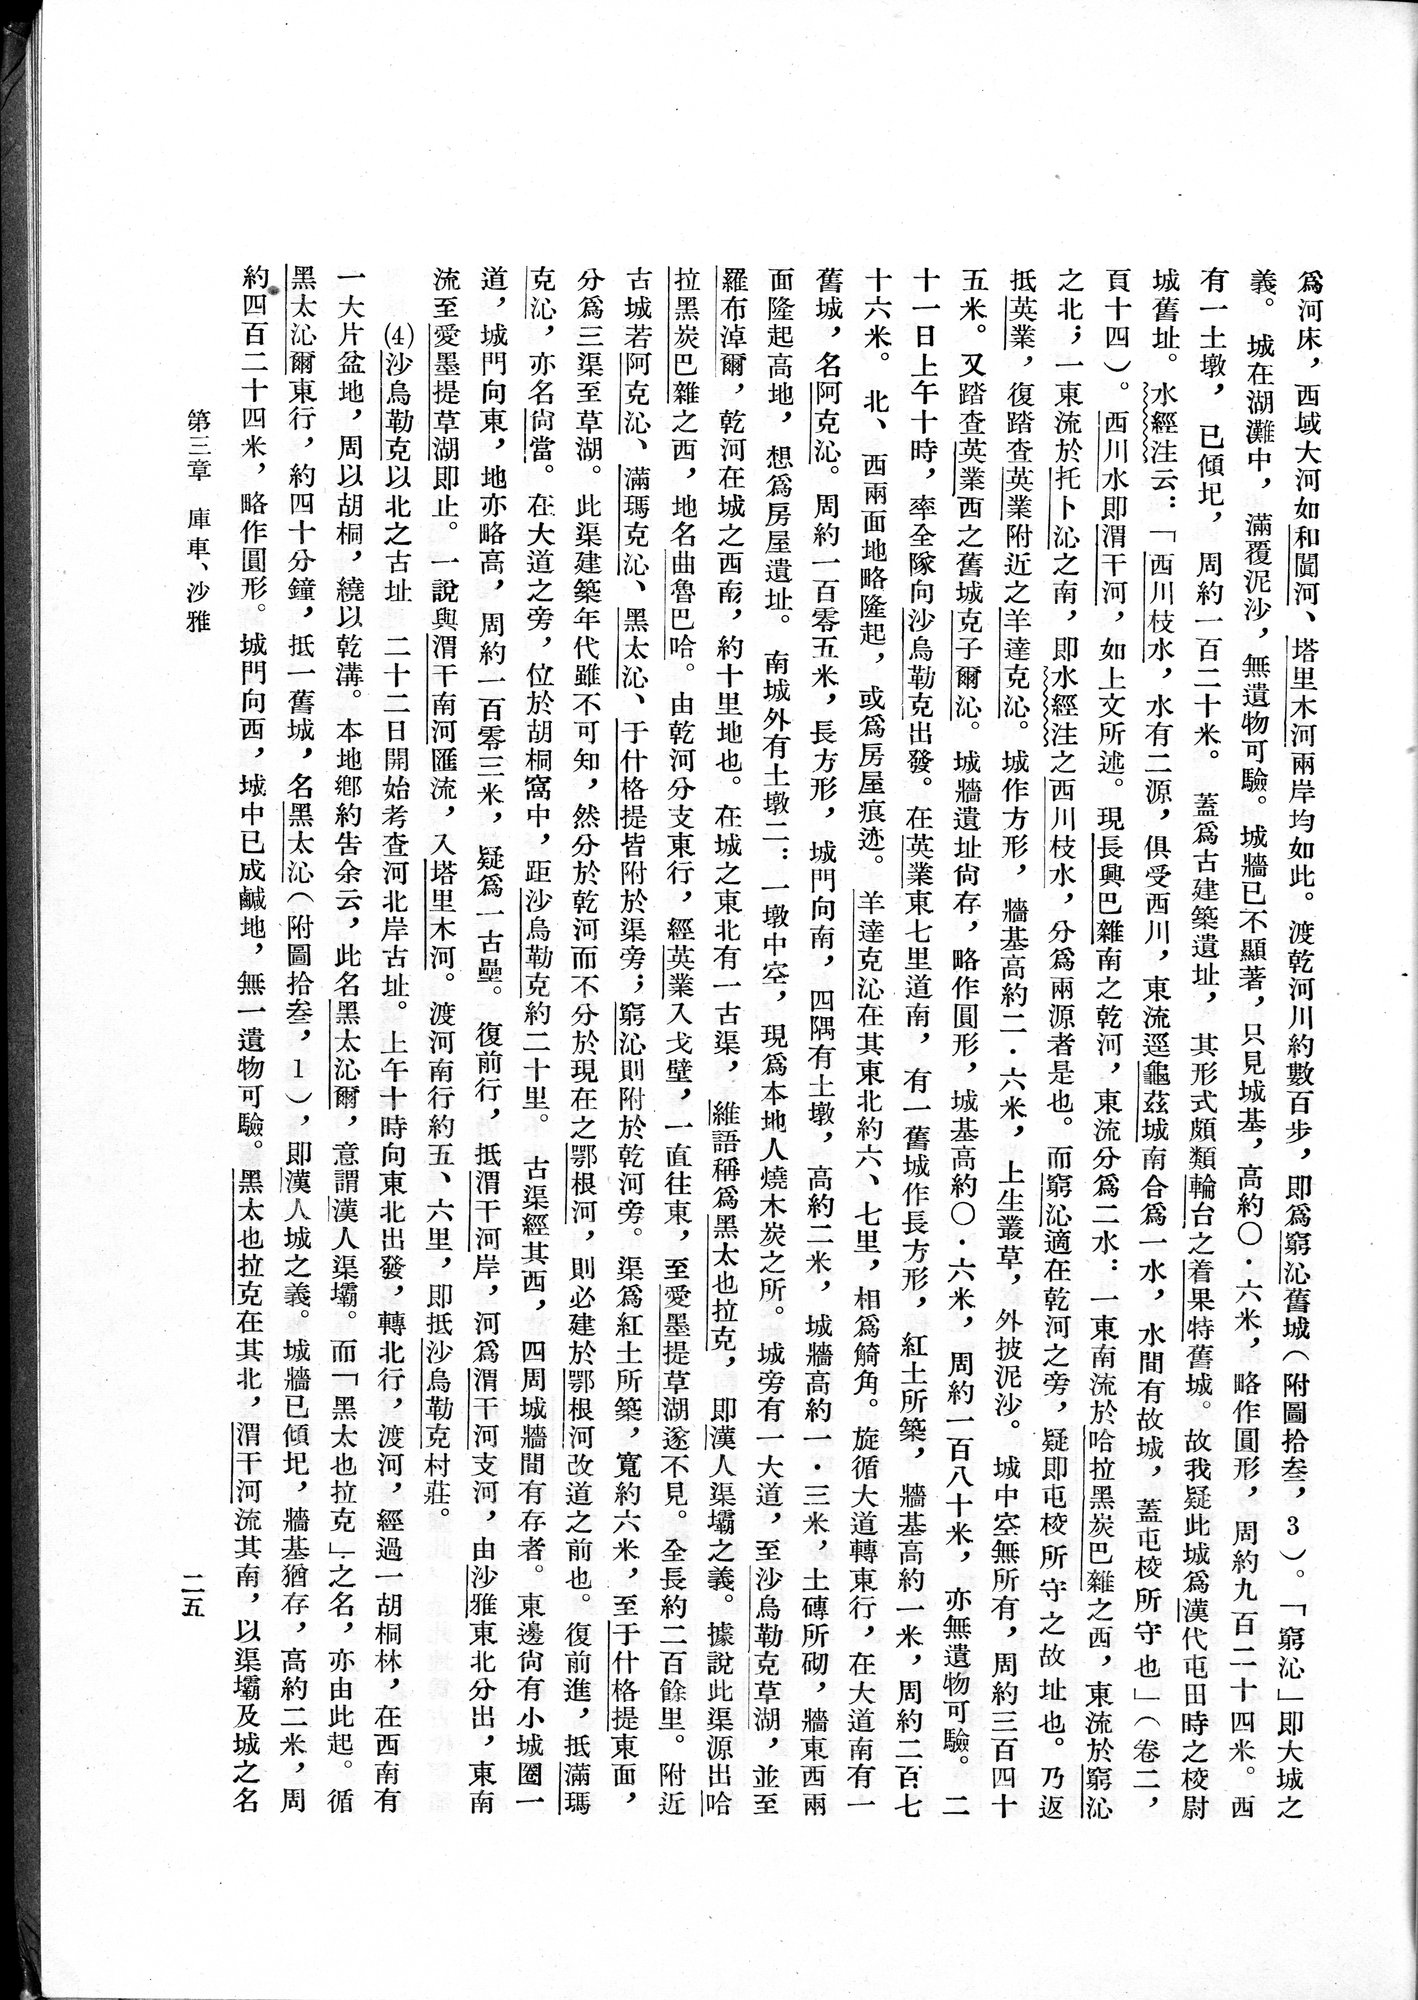 塔里木盆地考古記 : vol.1 / Page 49 (Grayscale High Resolution Image)